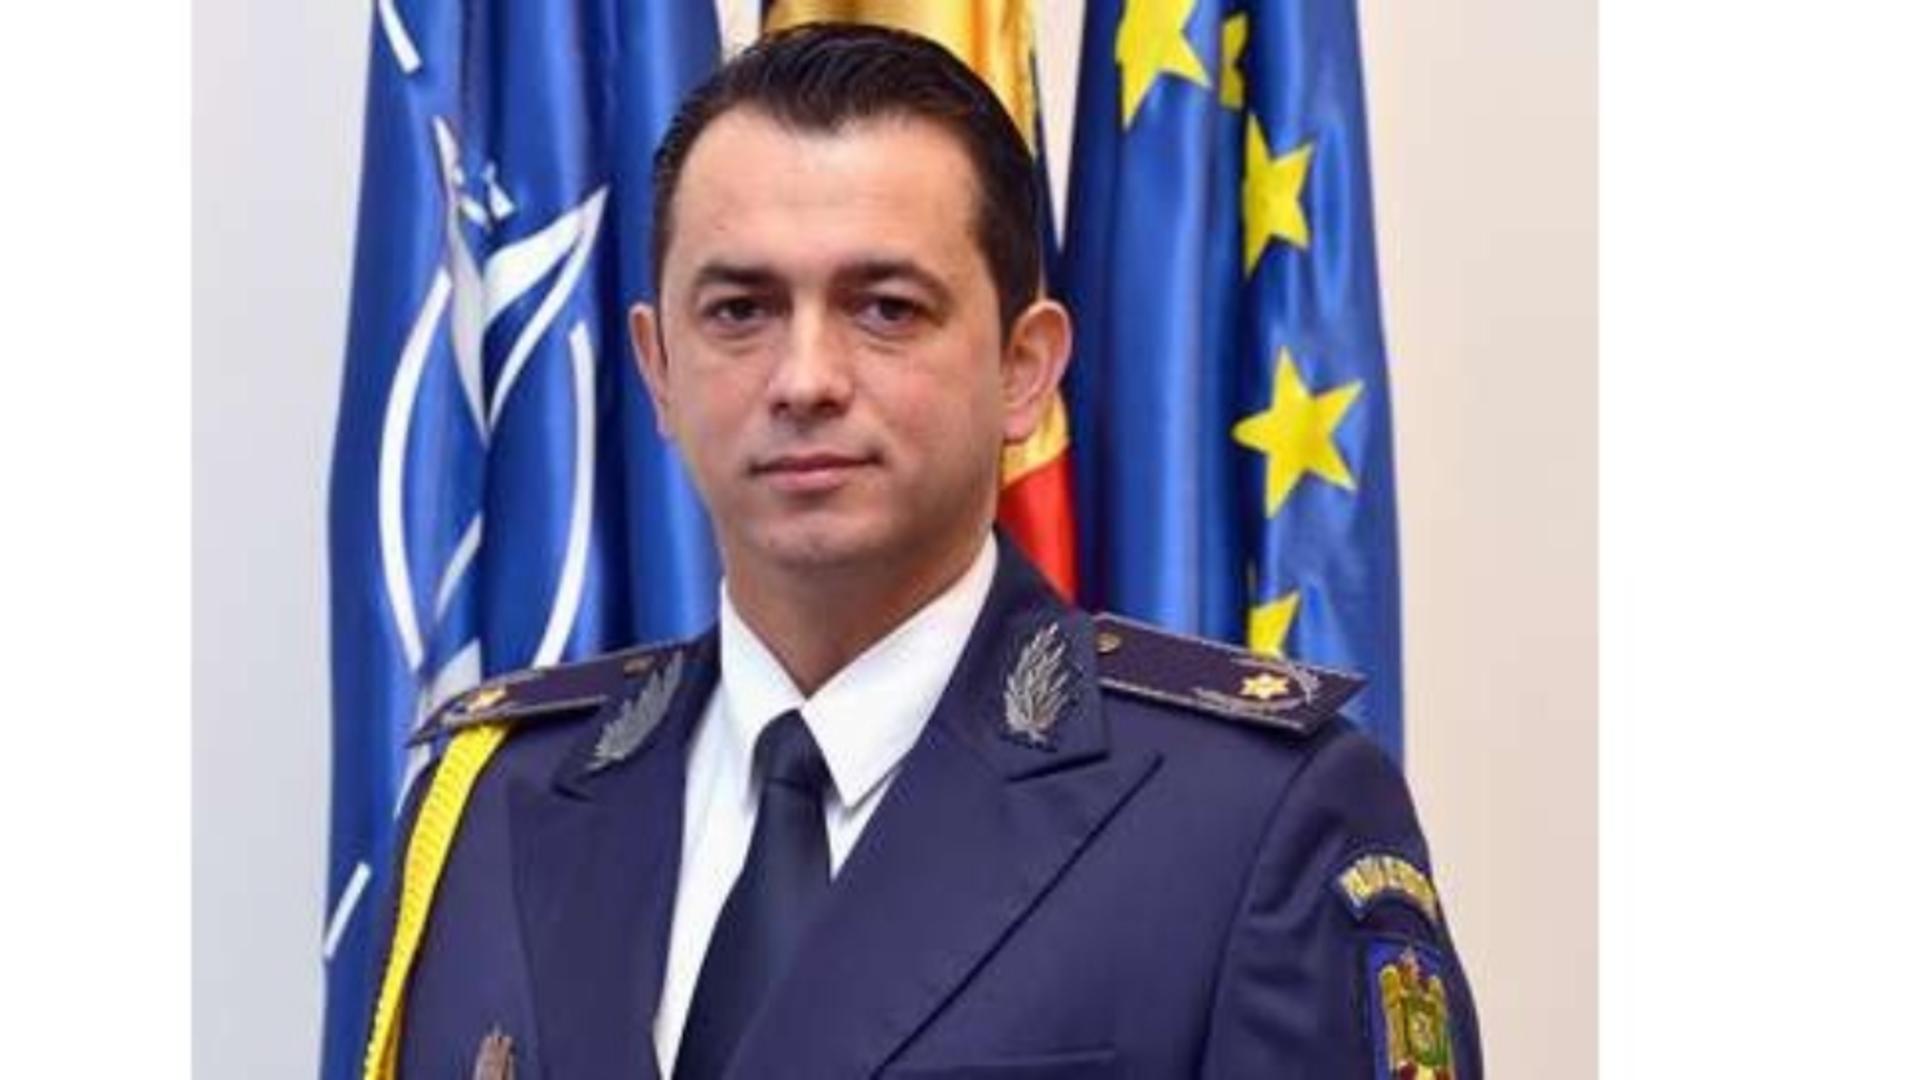 Șeful Poliției de Frontieră, Victor Ștefan Ivașcu, demis din functie de Cătălin Predoiu, după fuga lui Cherecheș din țară